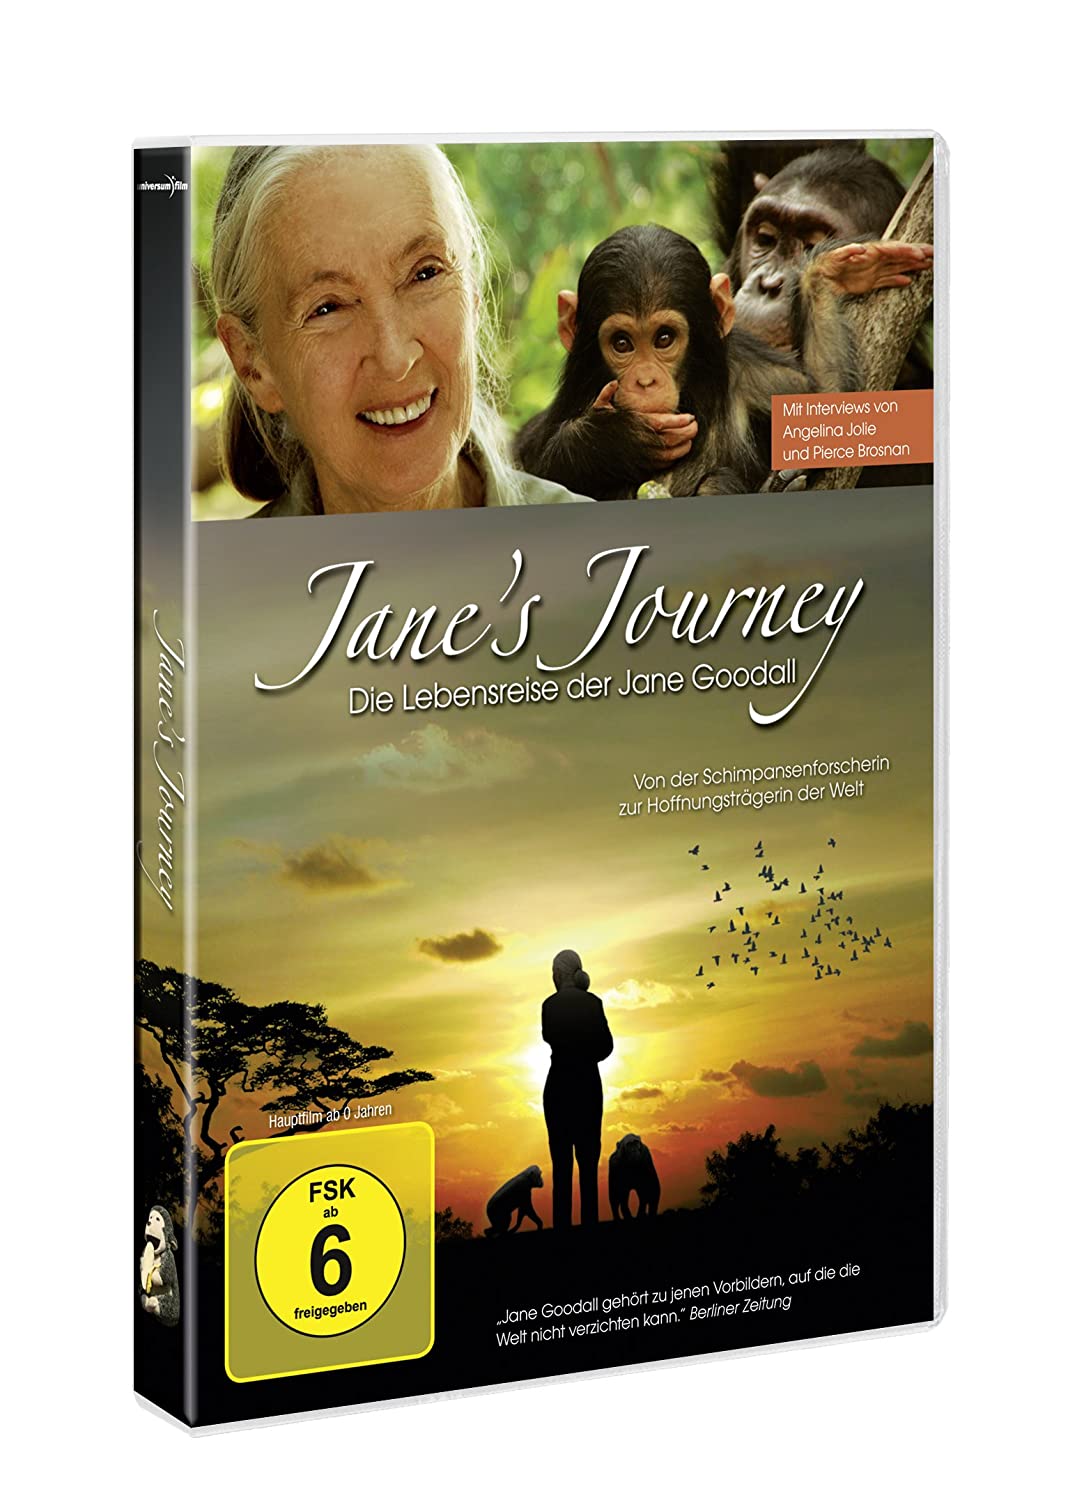 Jane's Journey - Lebensreise der Jane Goodall